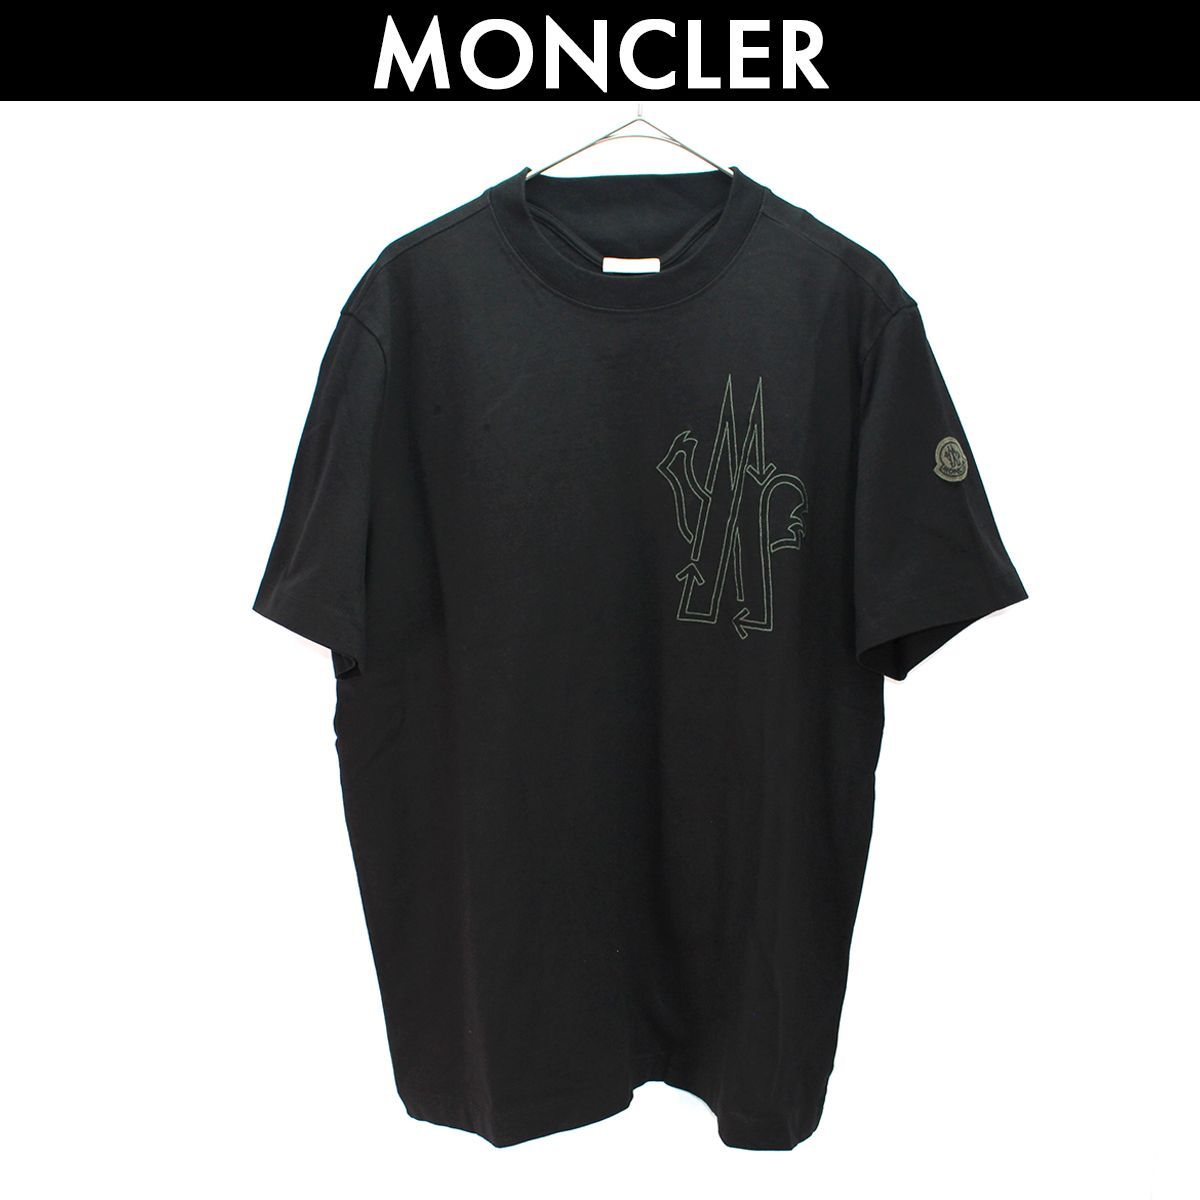 モンクレール MONCLER BORN TO PROTECT ロゴ Tシャツ メンズ ブラック